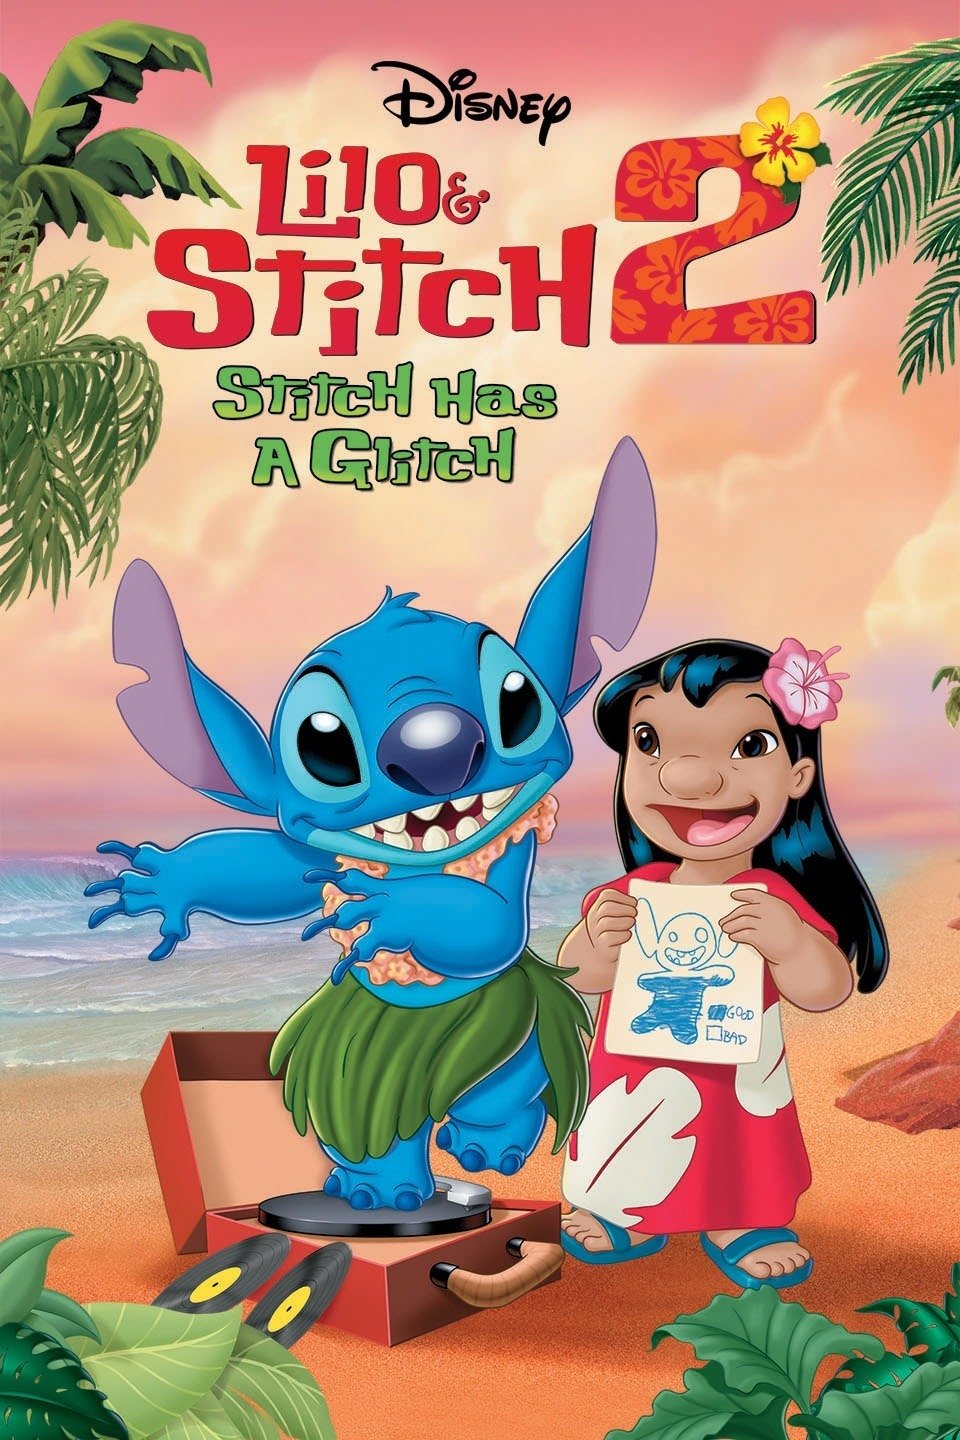 Lilo-Stitch-2-Stitch-Has-Glitch